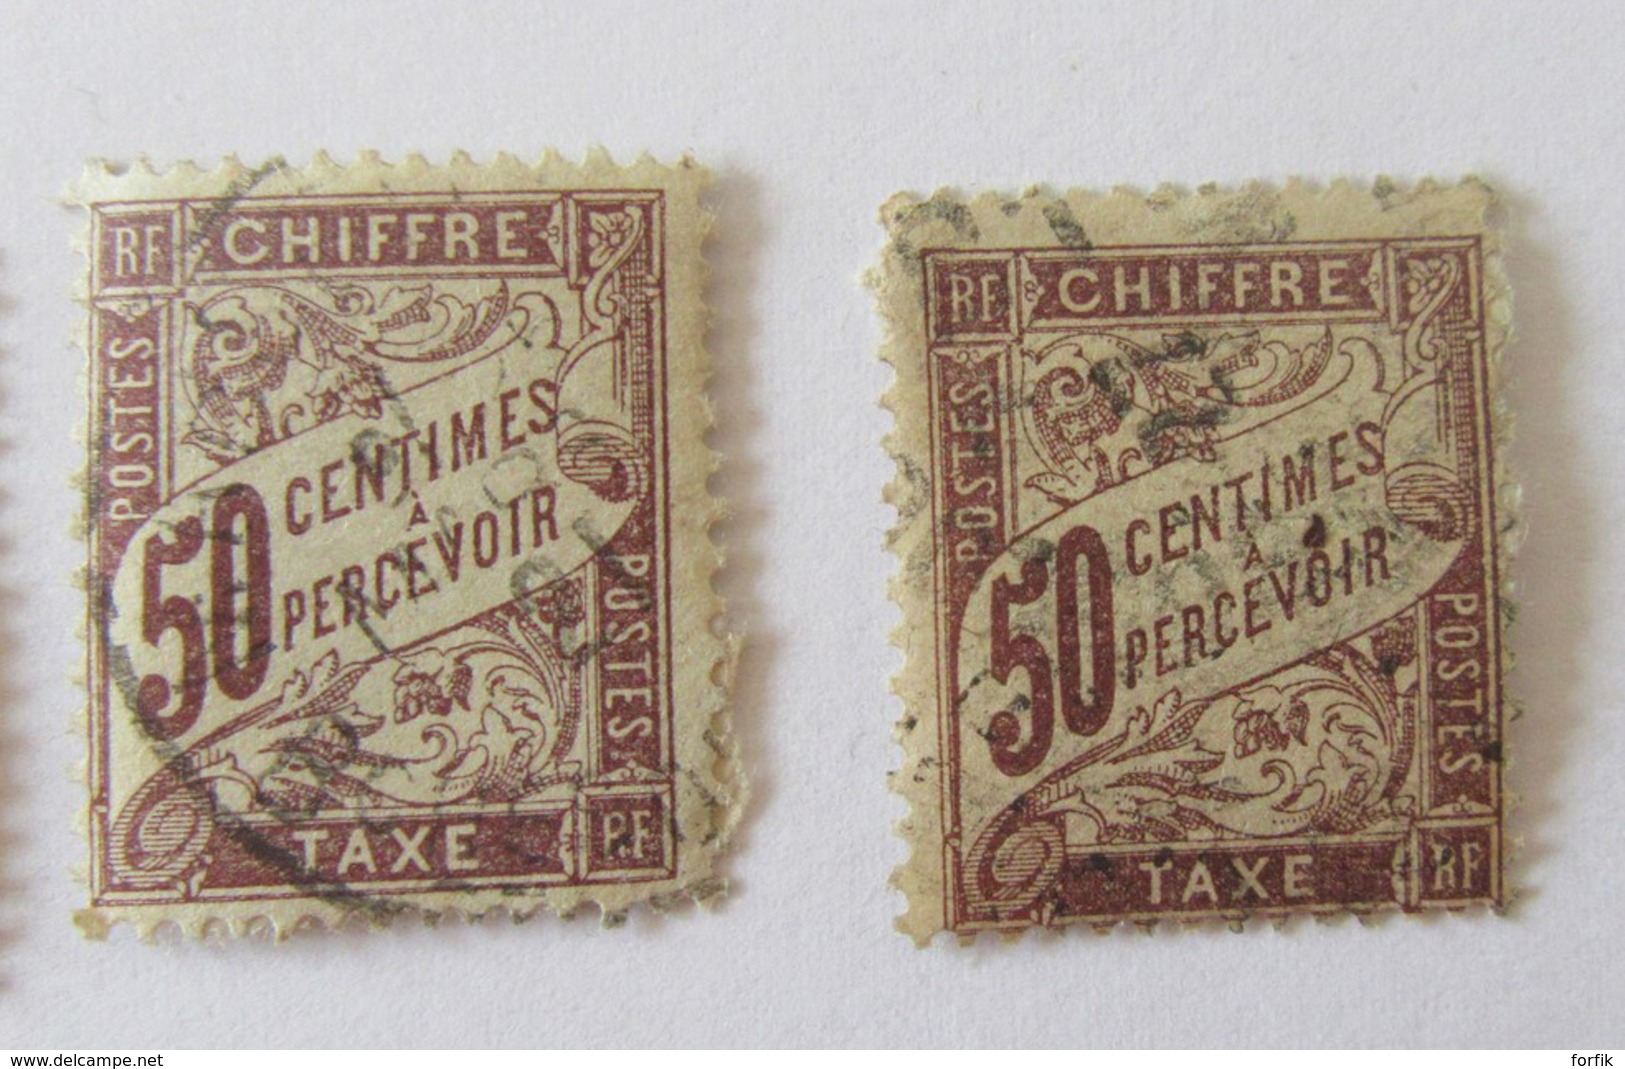 France - Période Classique et semi-moderne - Lot de timbres dont Sage, Merson, Croix-Rouge YT n°156 + taxe - Oblitérés